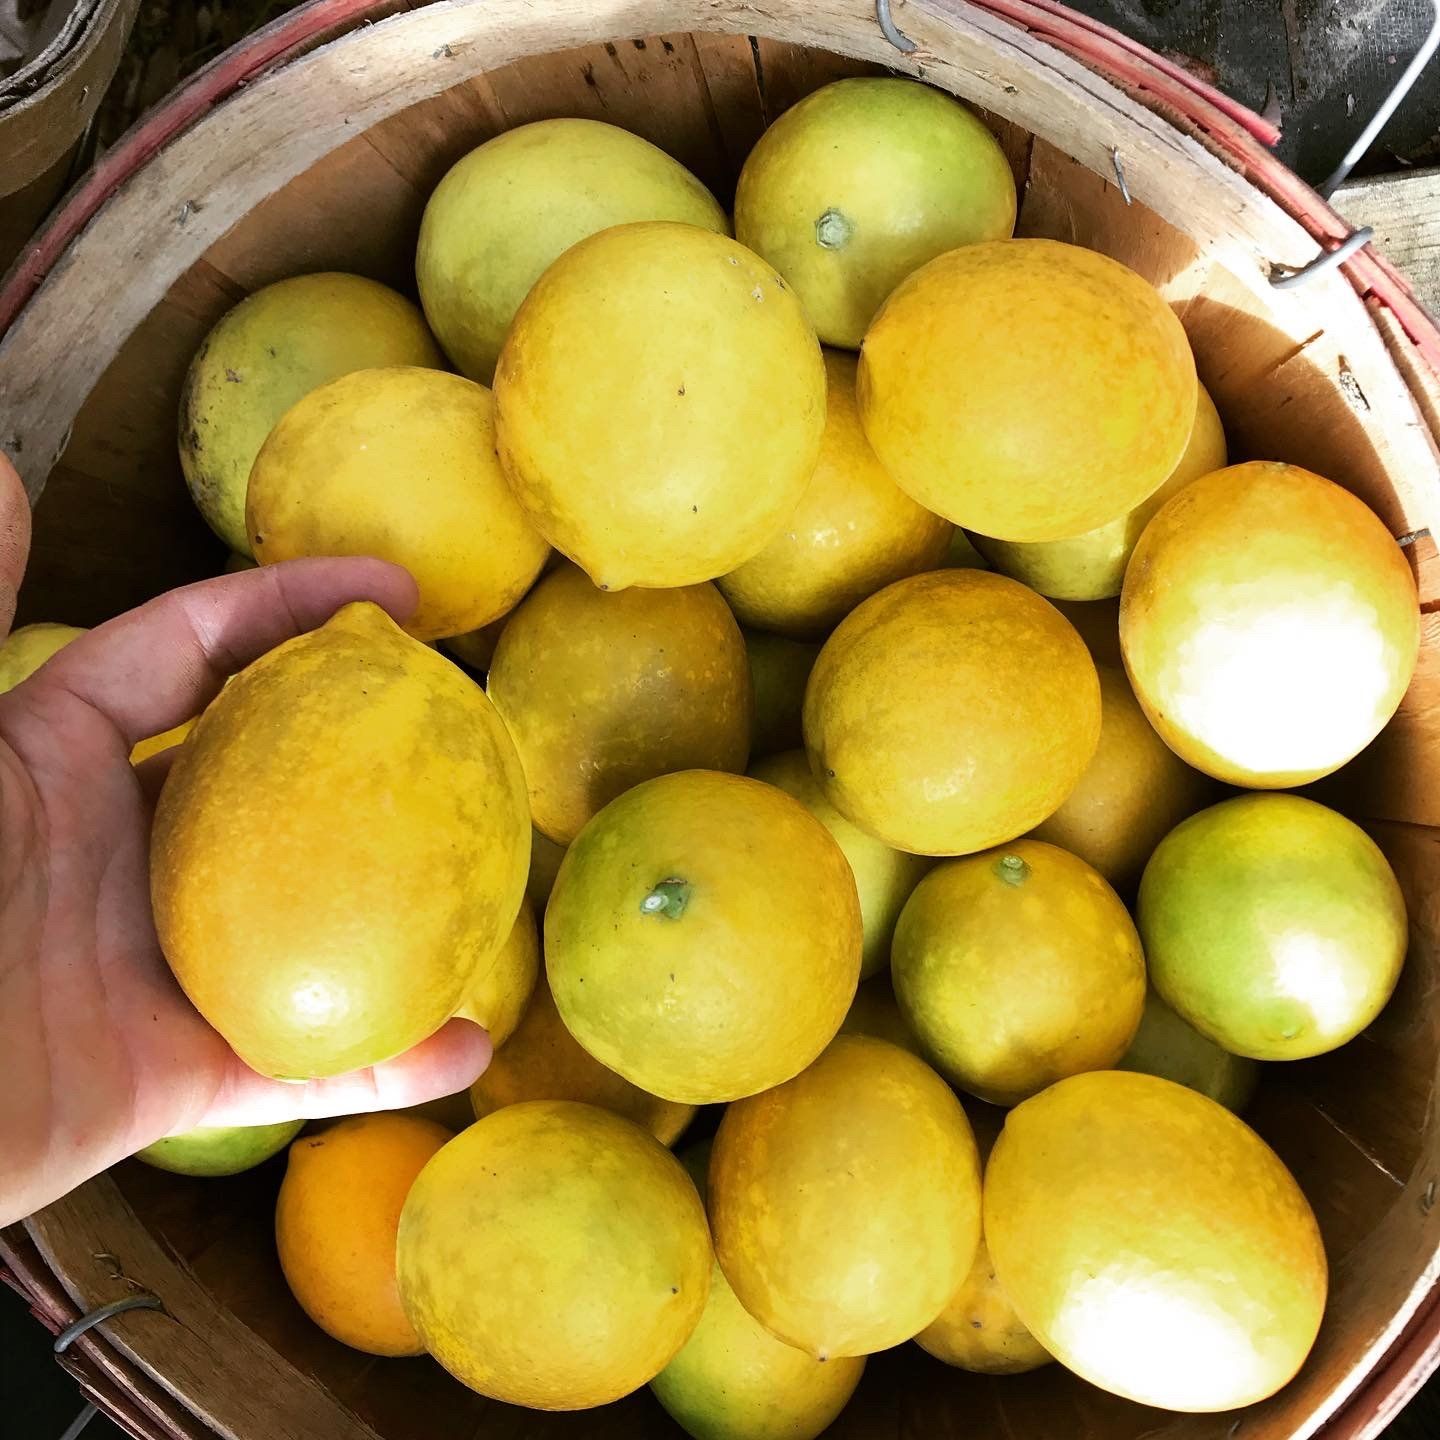 Next Happening: Myer Lemon season